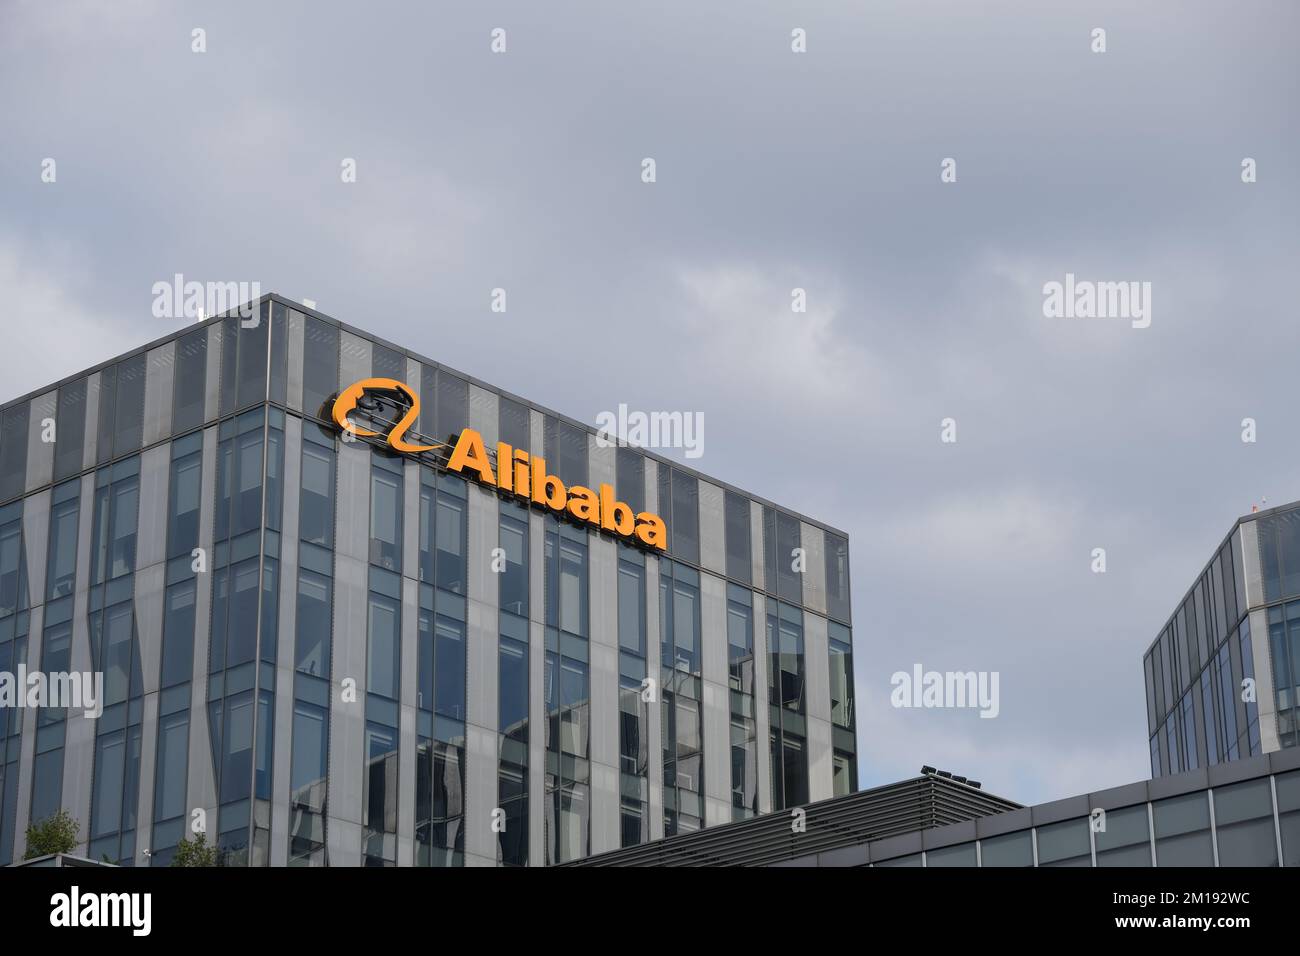 Alibaba immagini e fotografie stock ad alta risoluzione - Alamy